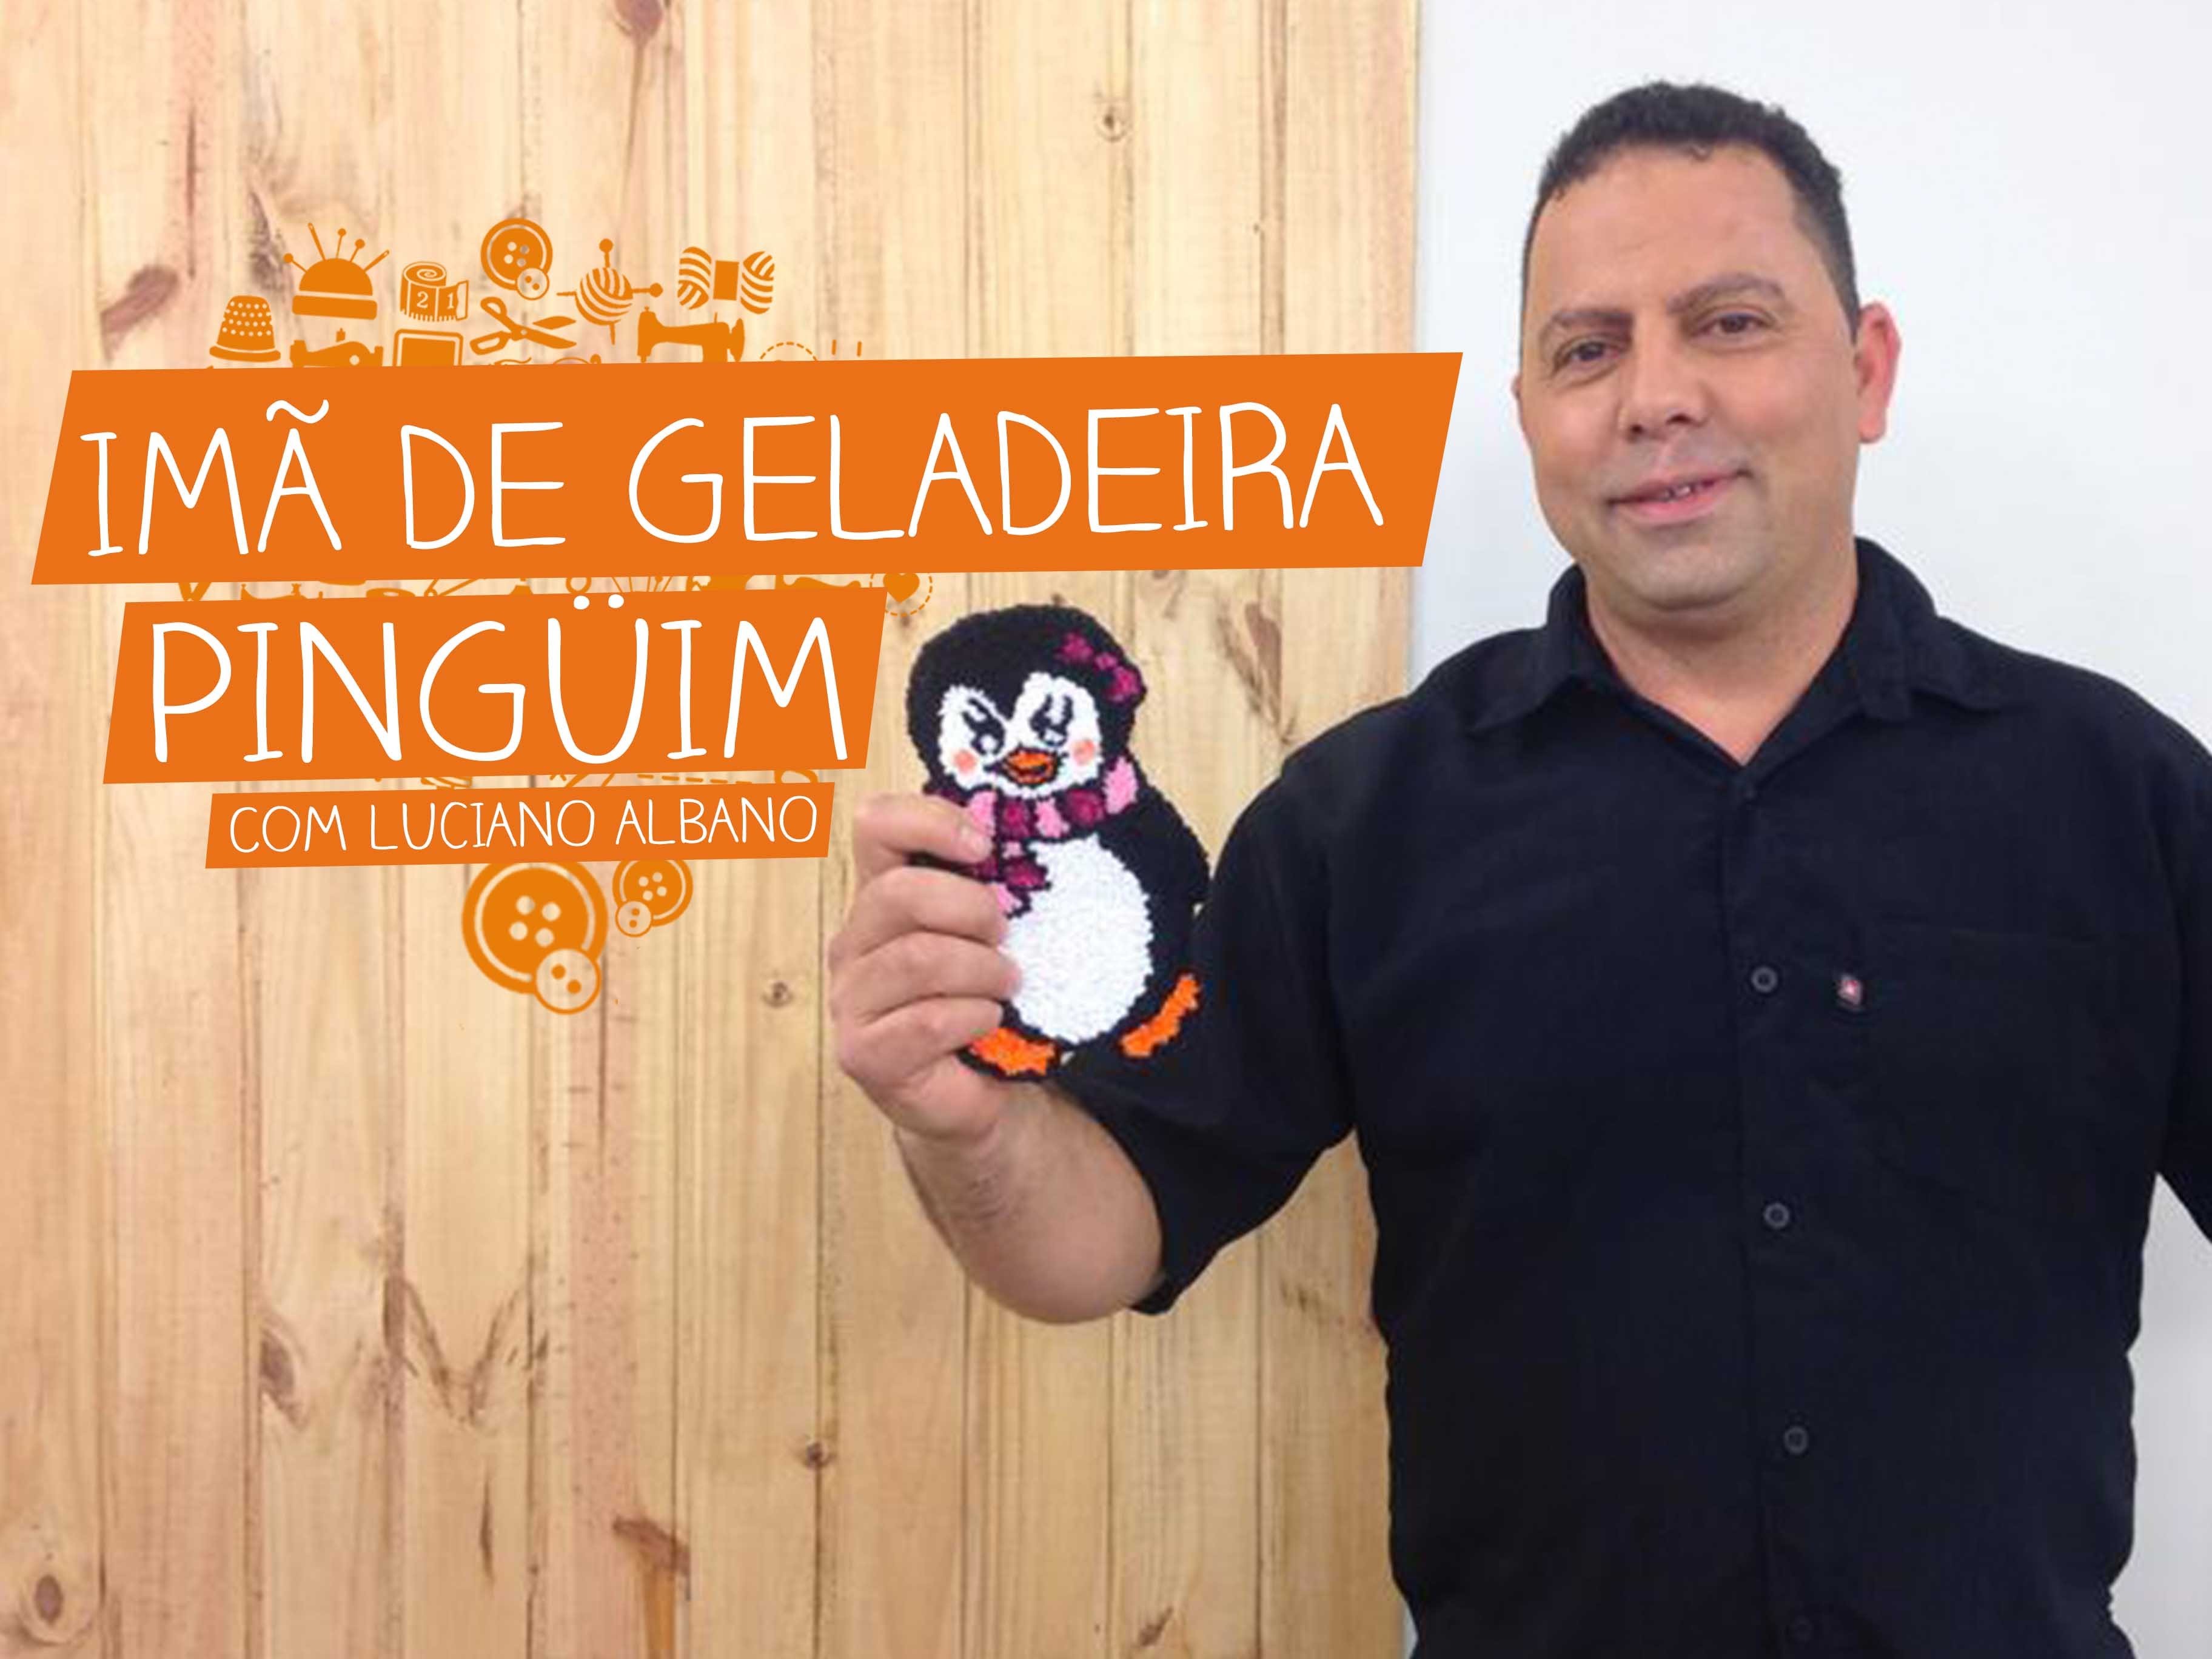 Imã de Geladeira Pinguim com Luciano Albano | Vitrine do Artesanato na TV